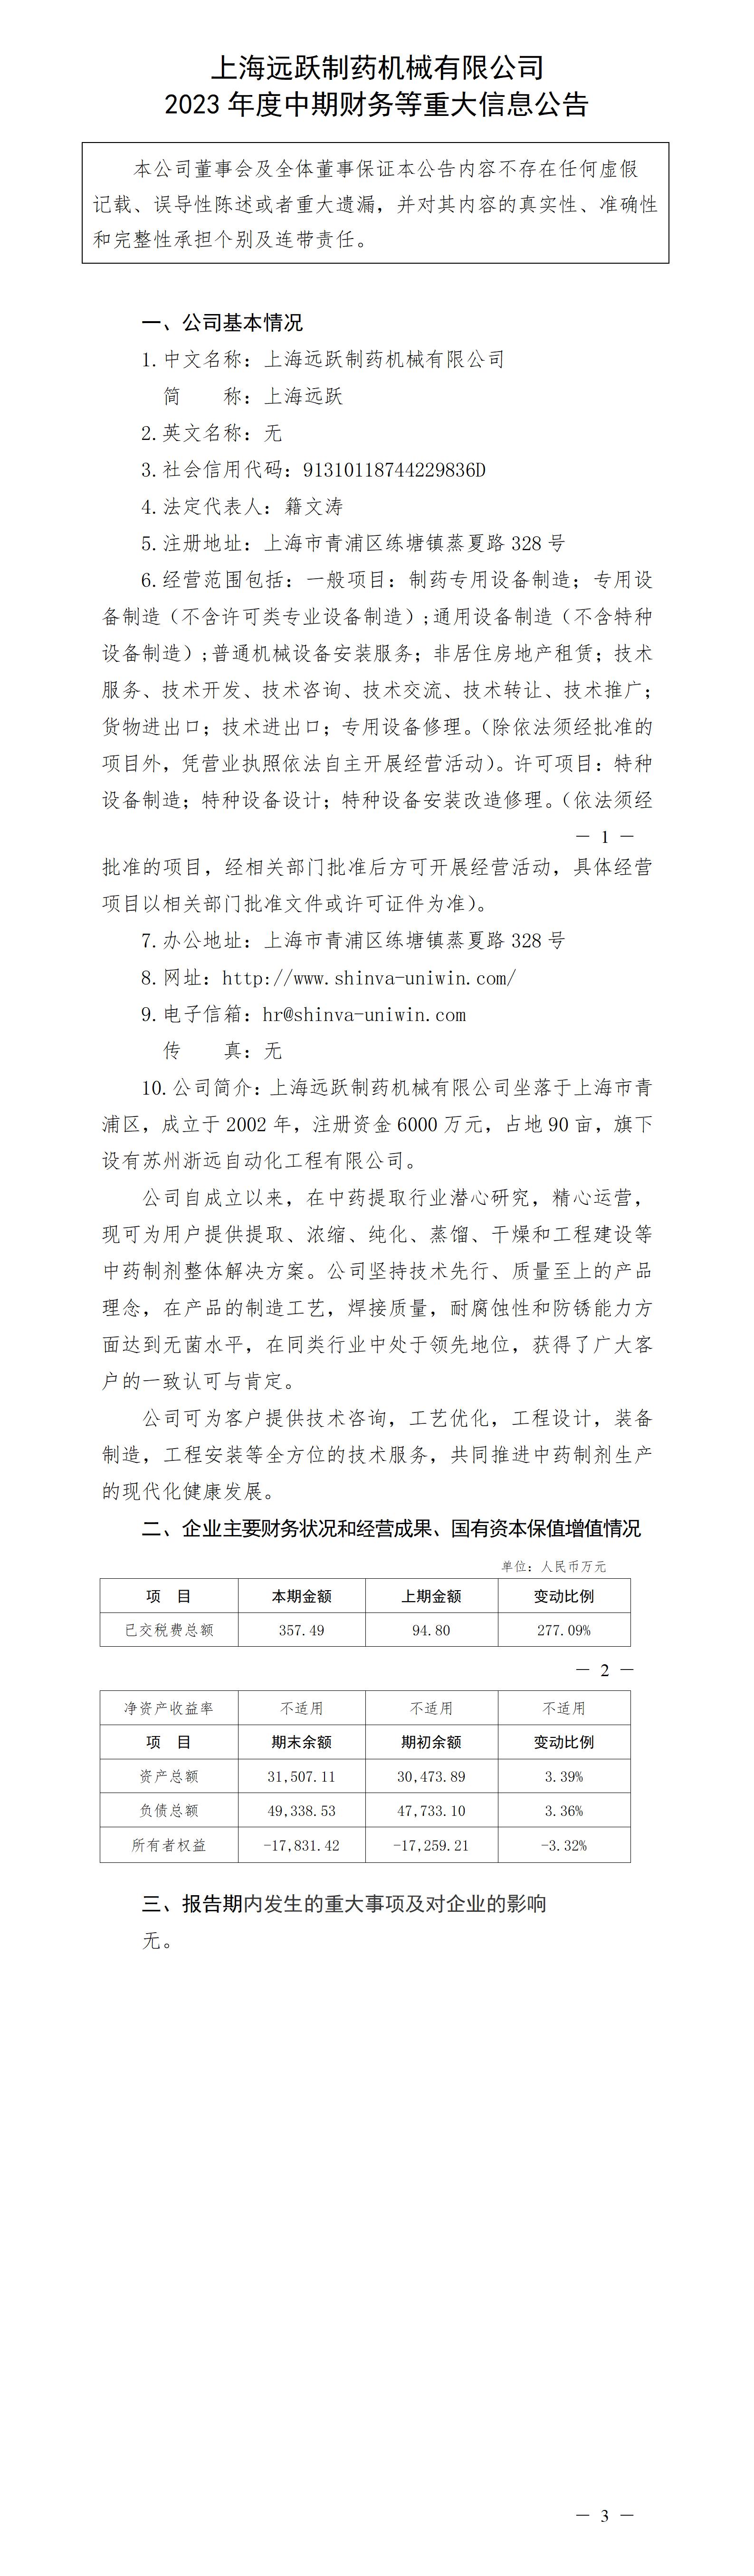 上海远跃制药机械有限公司2023年度中期财务等重大信息公告_01.jpg